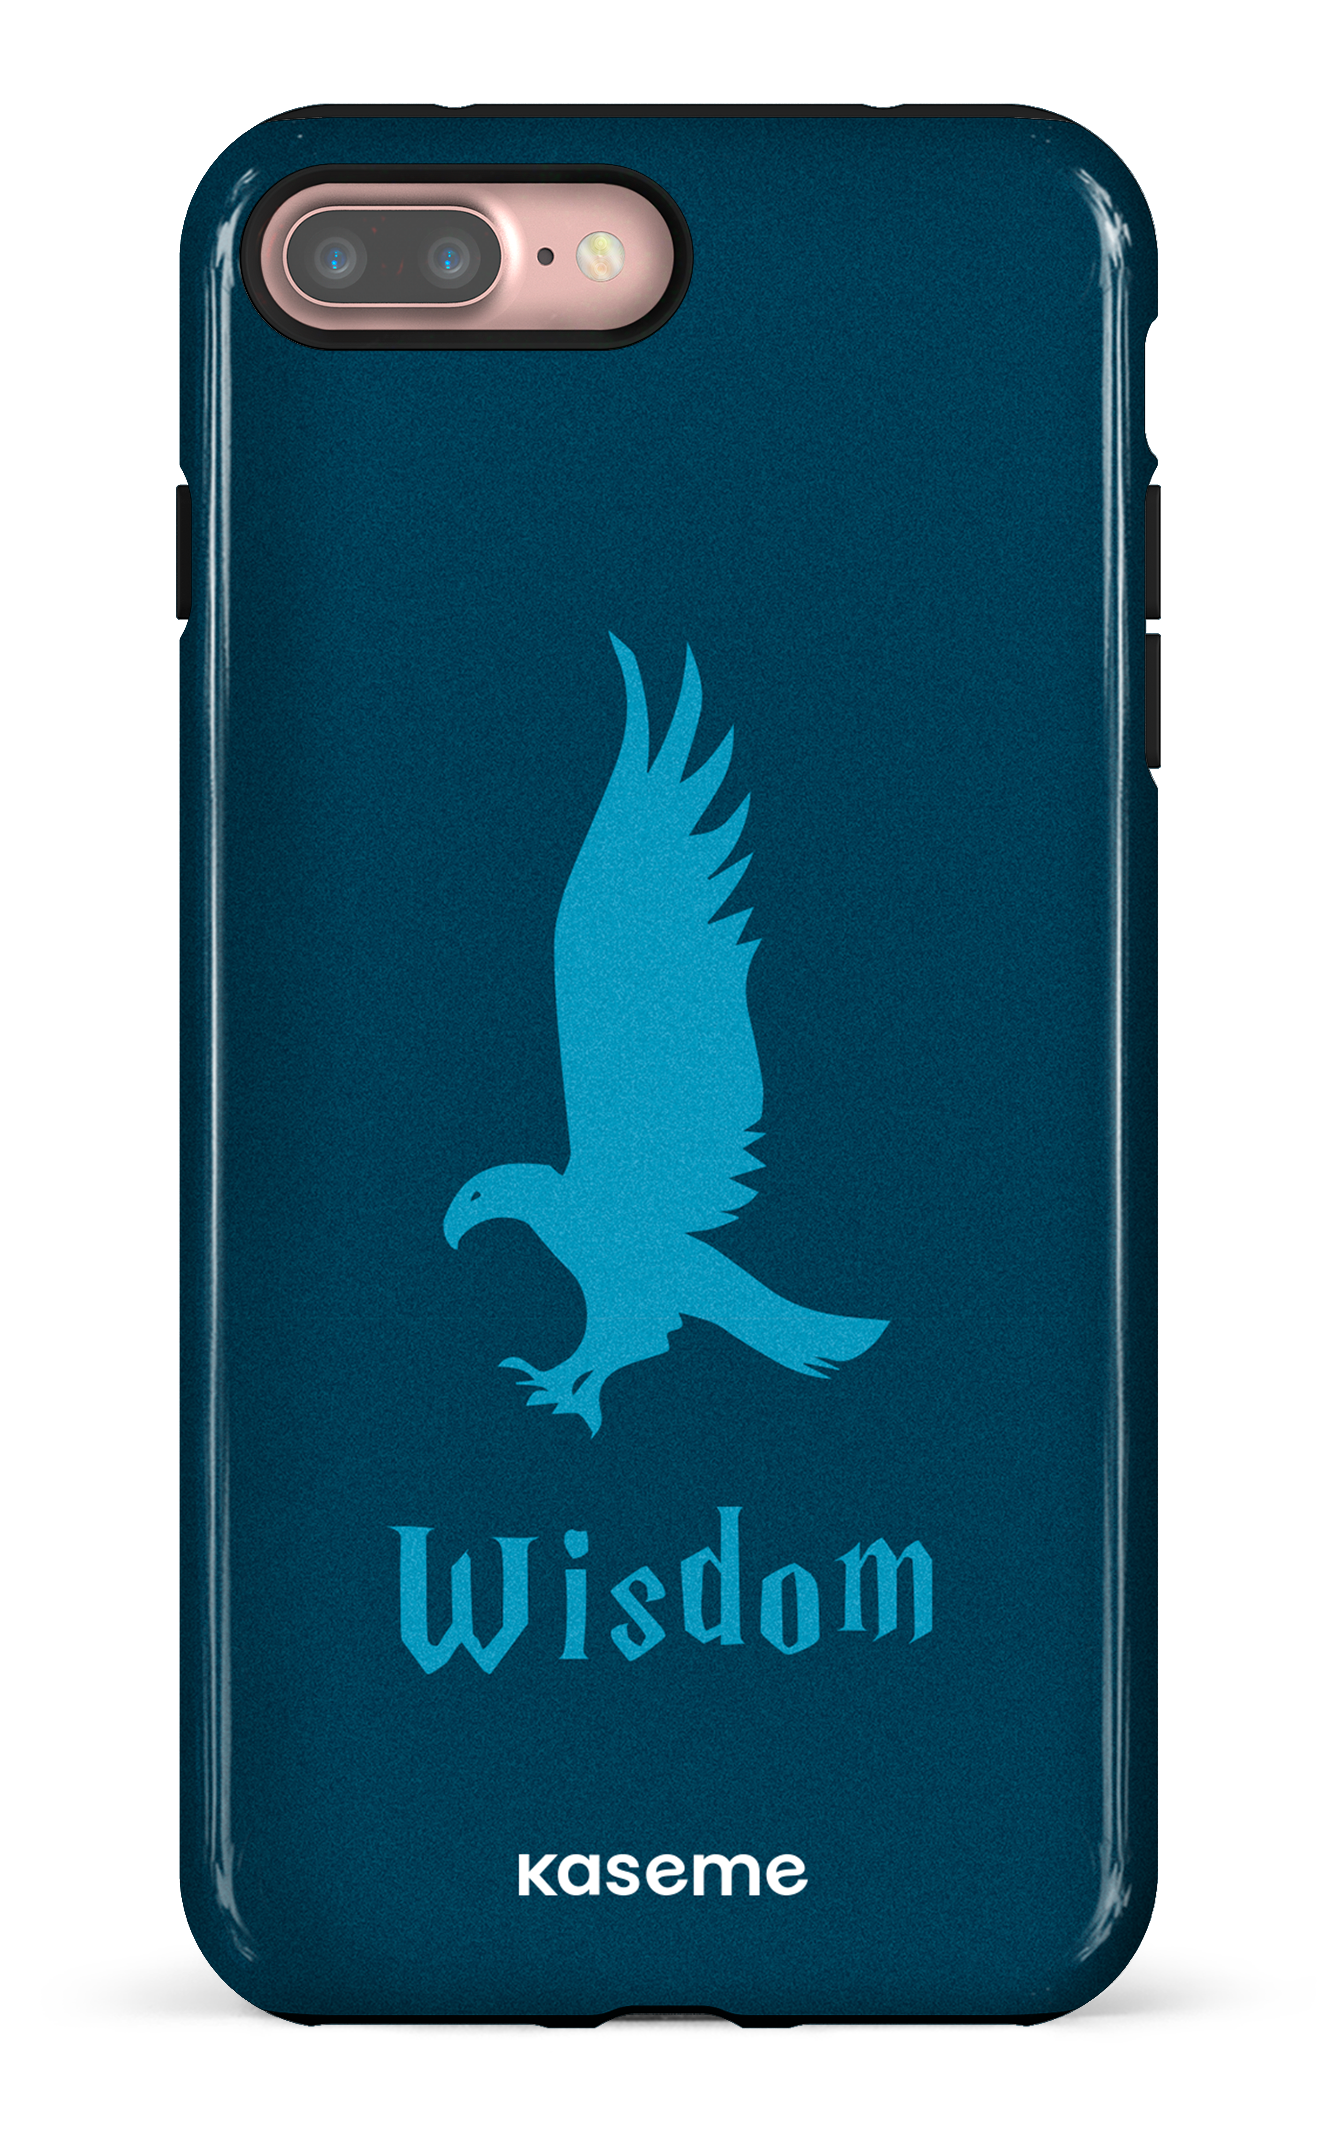 Wisdom - iPhone 7 Plus